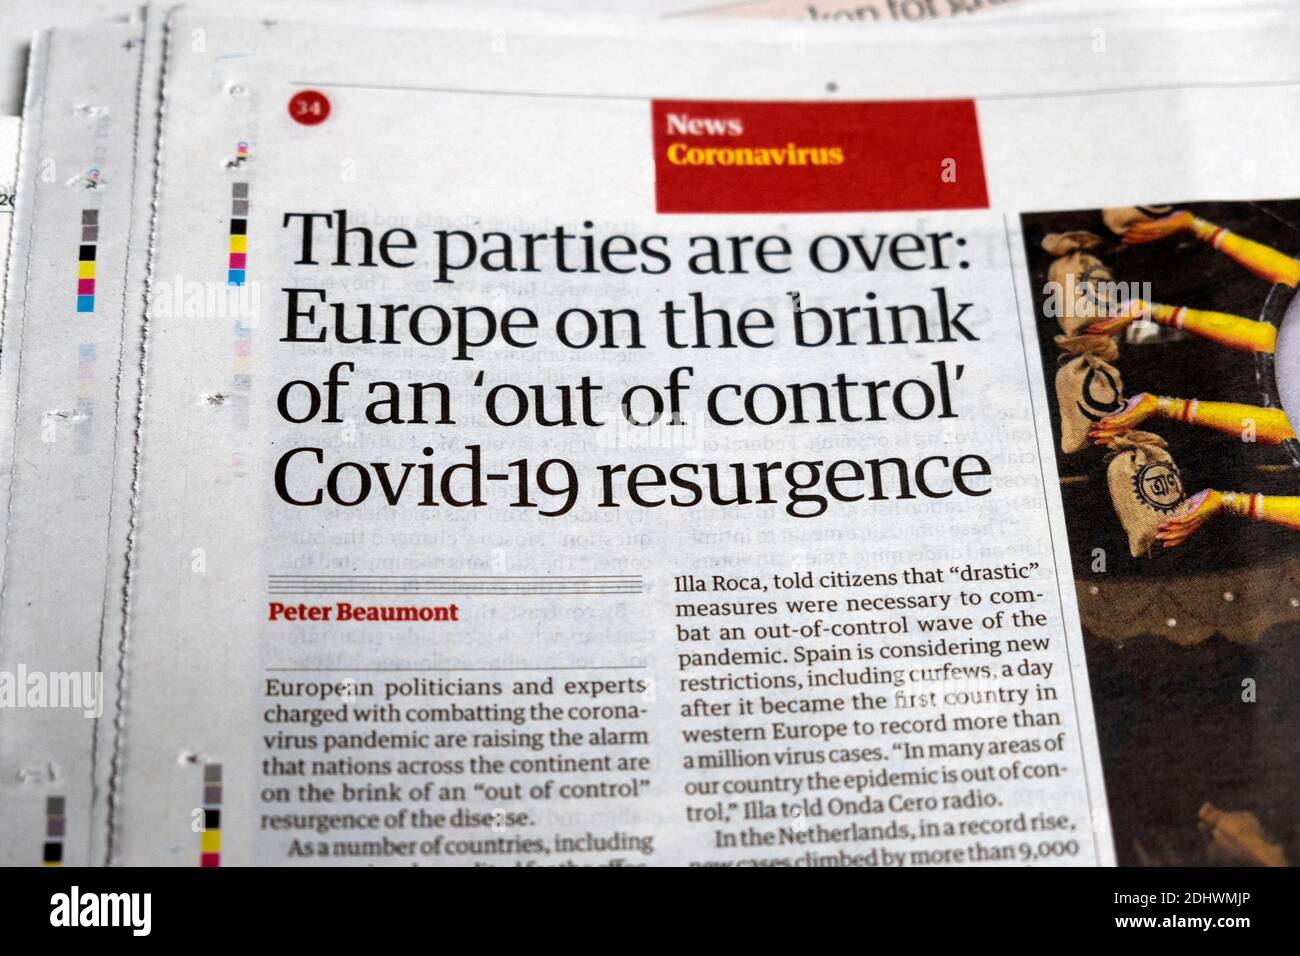 "Le parti sono finita: L'Europa sull'orlo di un titolo di giornale "fuori controllo" Covid-19 Resurgence all'interno dell'articolo 23 ottobre 2020 Londra UK Foto Stock